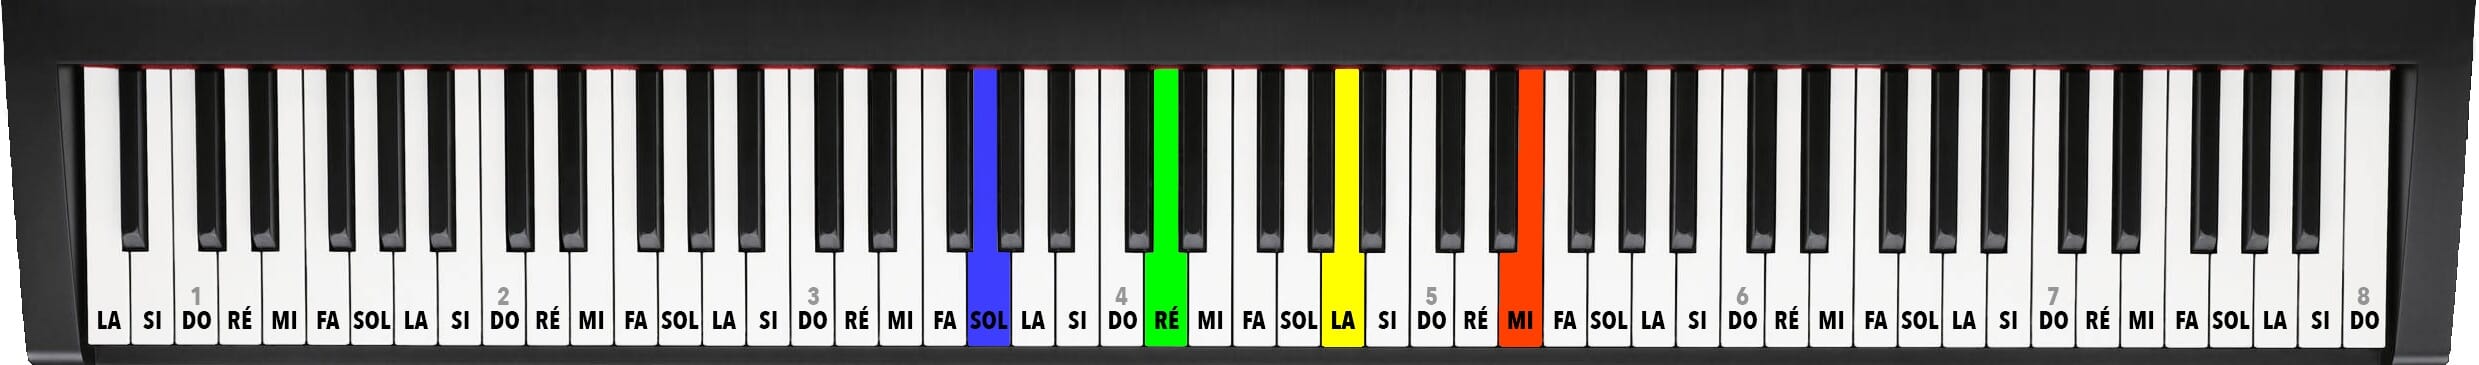 Les quatre cordes du violon identifiées sur un piano standard. En bleu la corde de Sol sur le piano, en vert la corde de Ré, en jaune la corde de La et en rouge la corde de Mi.